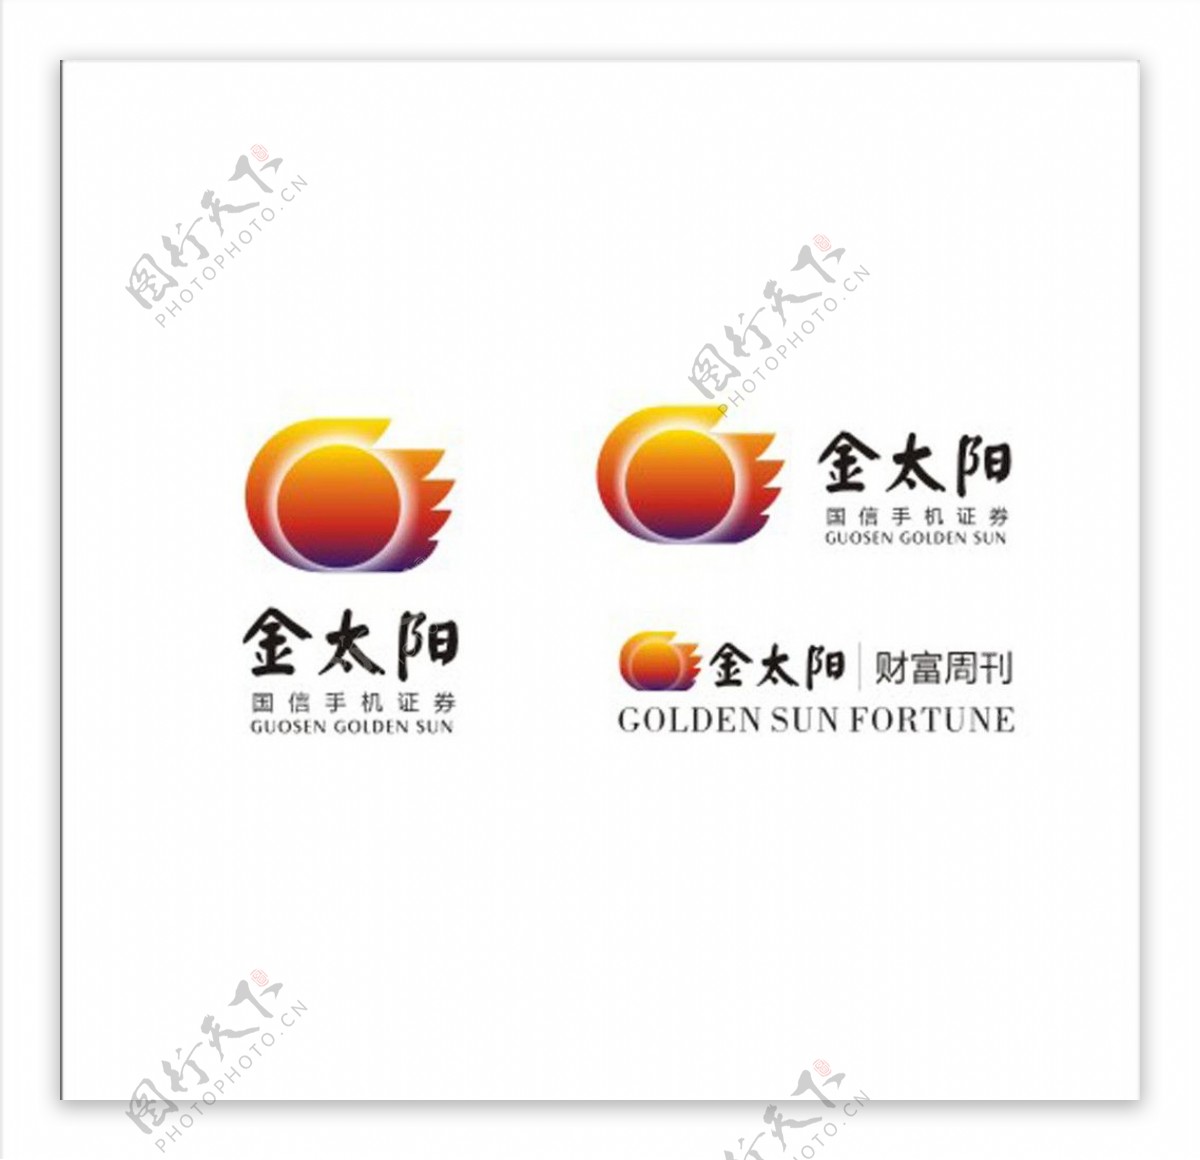 国信证券子品牌金太阳标志图片